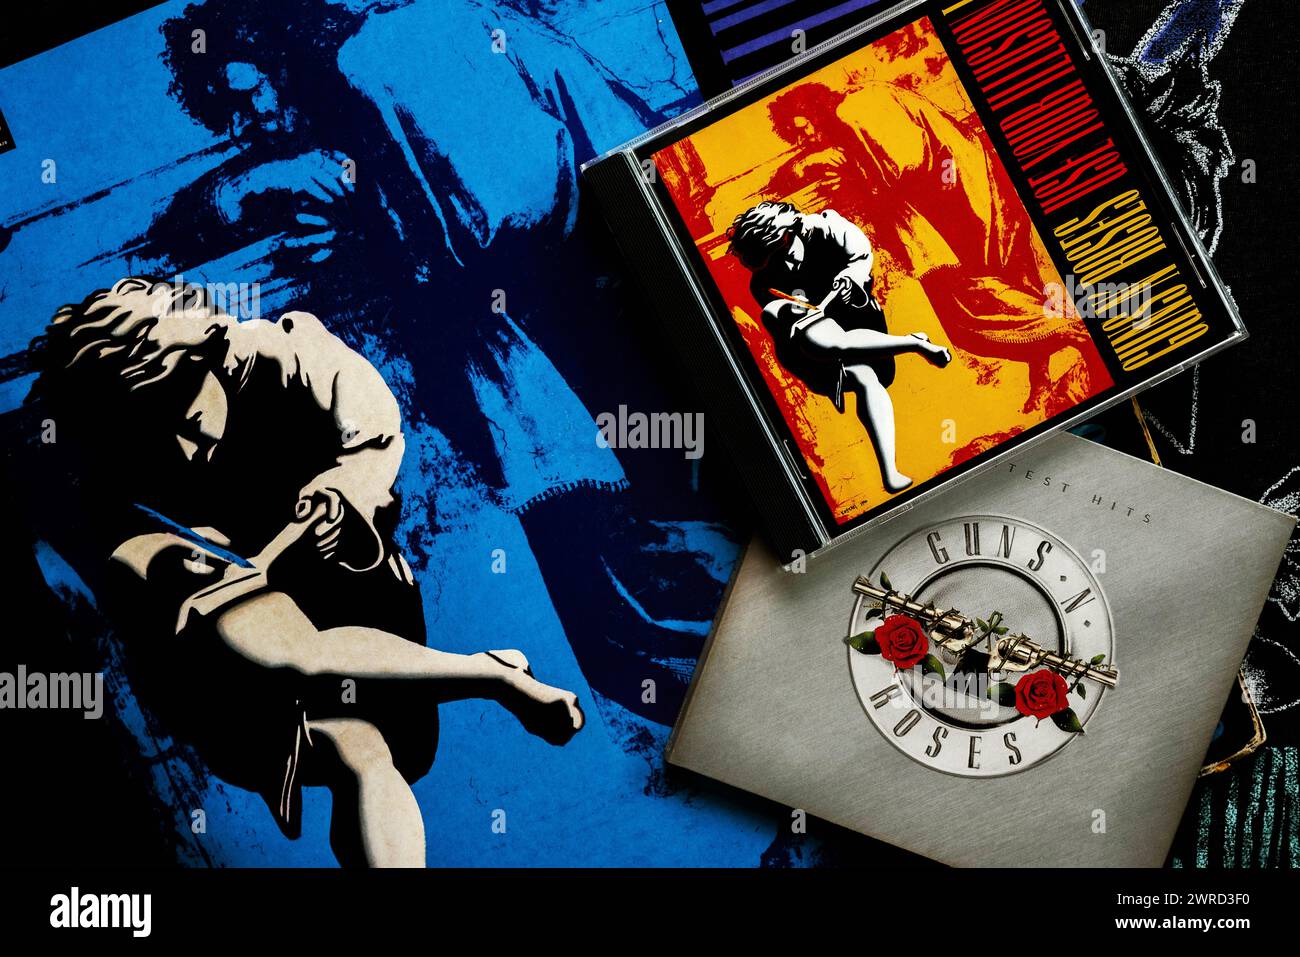 Nahaufnahme von Vinyl lp Verwenden Sie Ihre Illusion der amerikanischen Heavy-Metal-Gruppe Guns and Roses und cds auf einem T-Shirt. Illustrativer Leitartikel Stockfoto